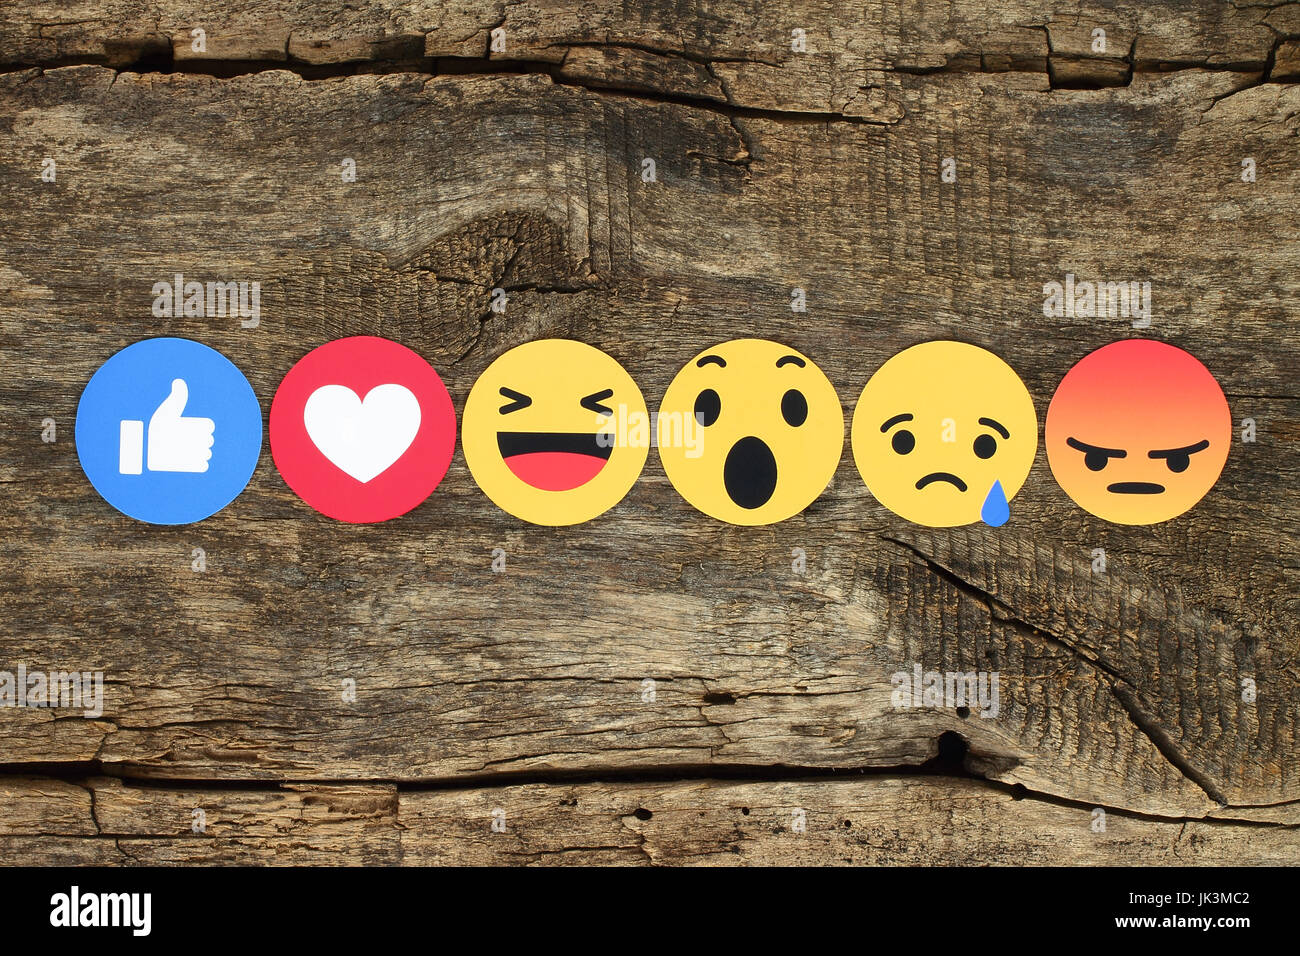 Kiew, Ukraine - 7. Februar 2017: Facebook like-Button 6 einfühlsam Emoji-Reaktionen auf Papier gedruckt und auf hölzernen Hintergrund platziert. Facebook ist ein w Stockfoto